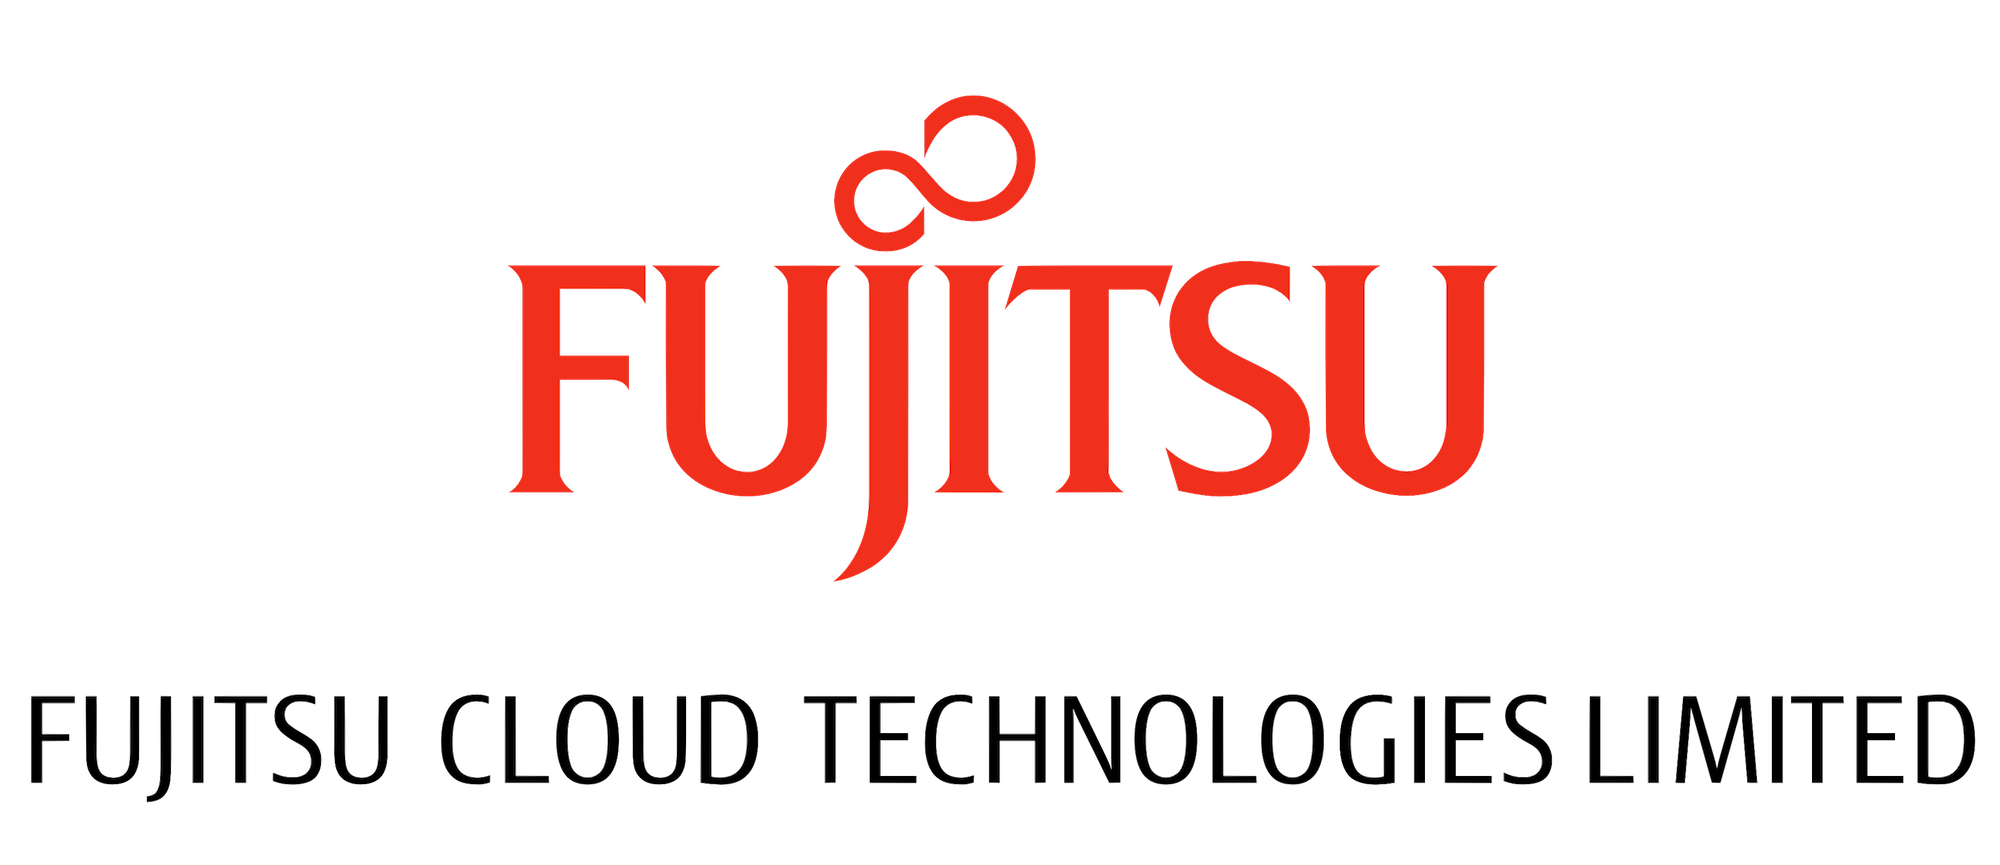 Fujitsu Cloud Technologies logo